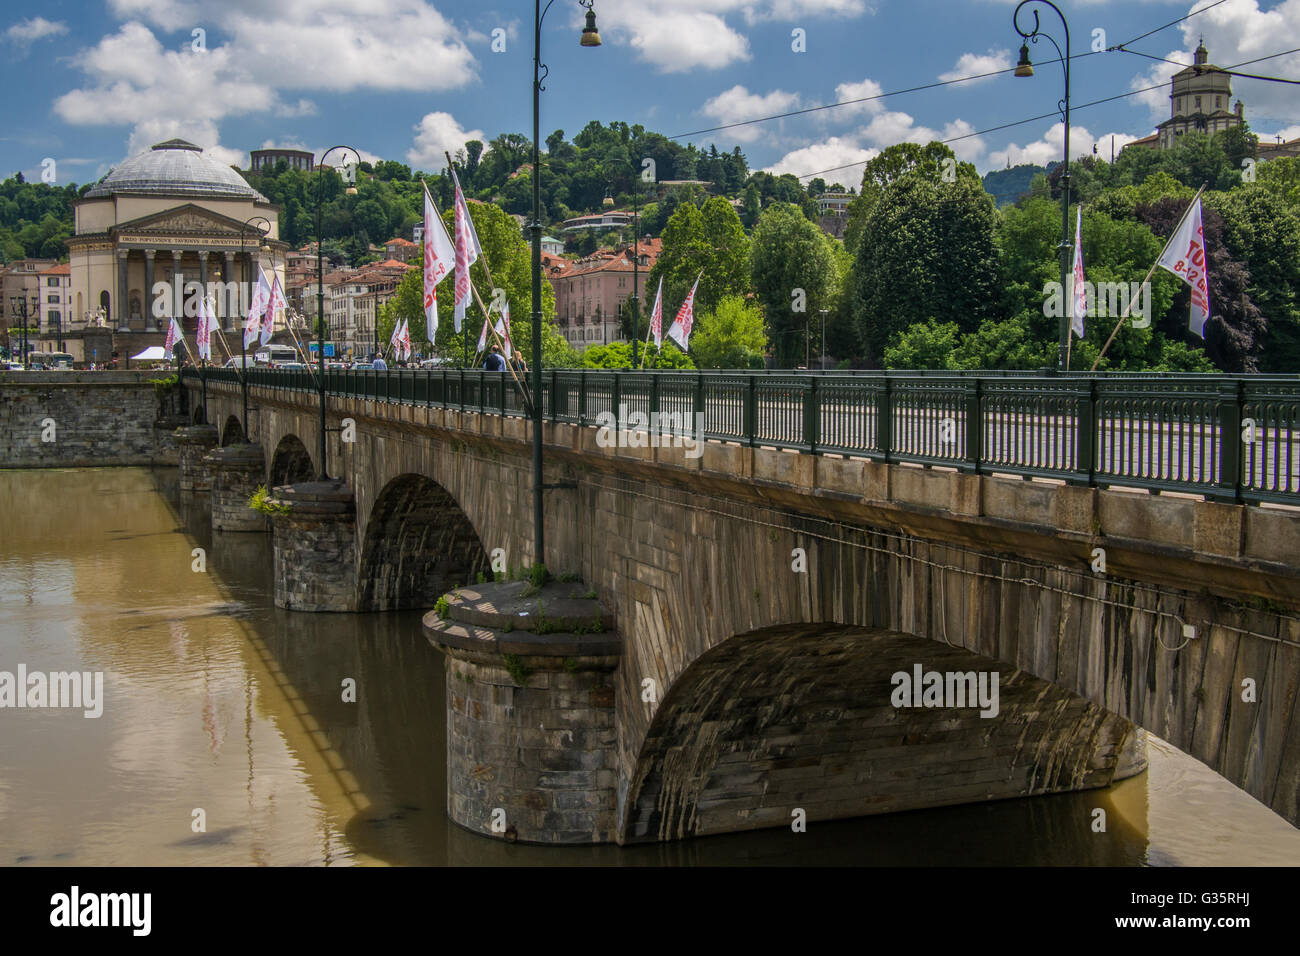 Bridge over the River Po and the "Gran Madre di Dio" church, Turin, Piedmont region, Italy. Stock Photo